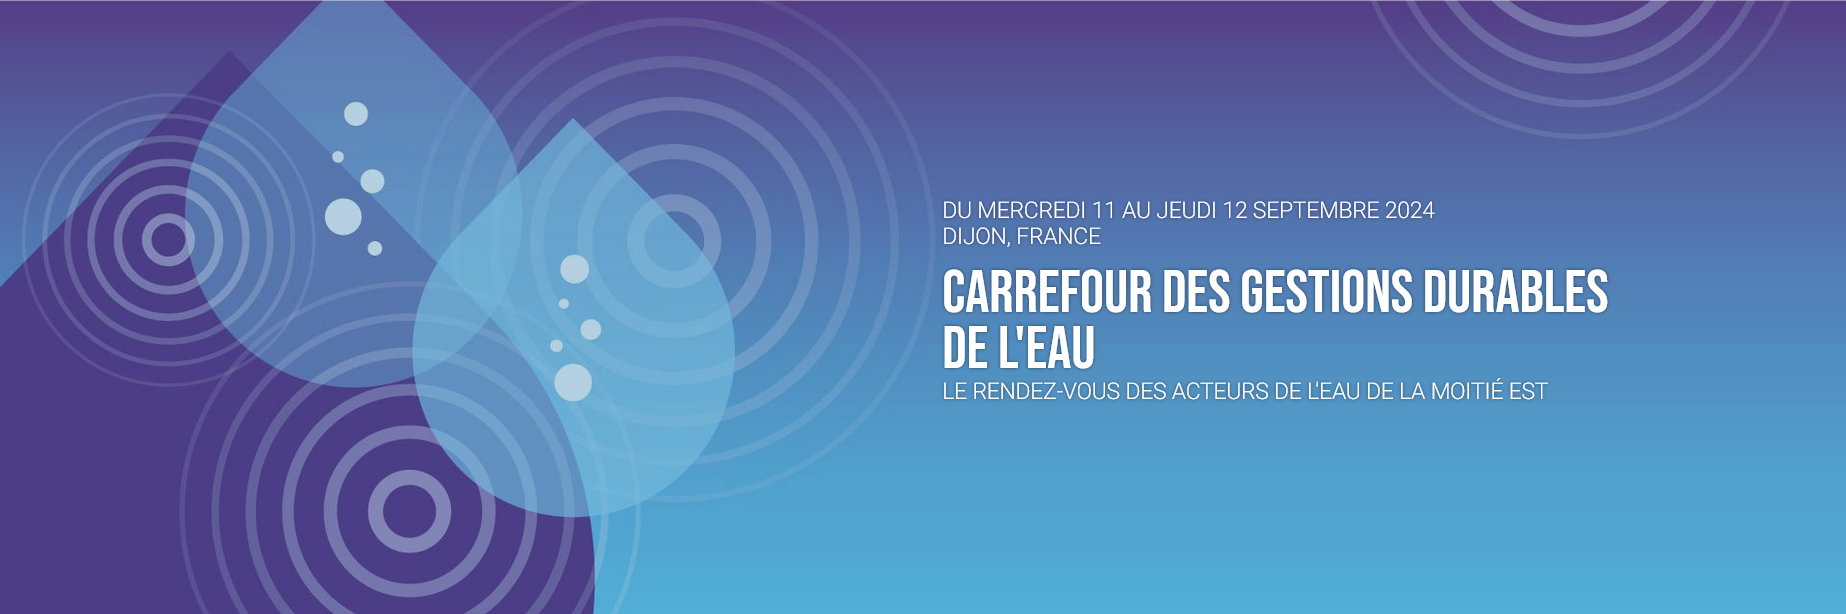 Carrefour des Gestions durables de l'eau 2024 - Dijon